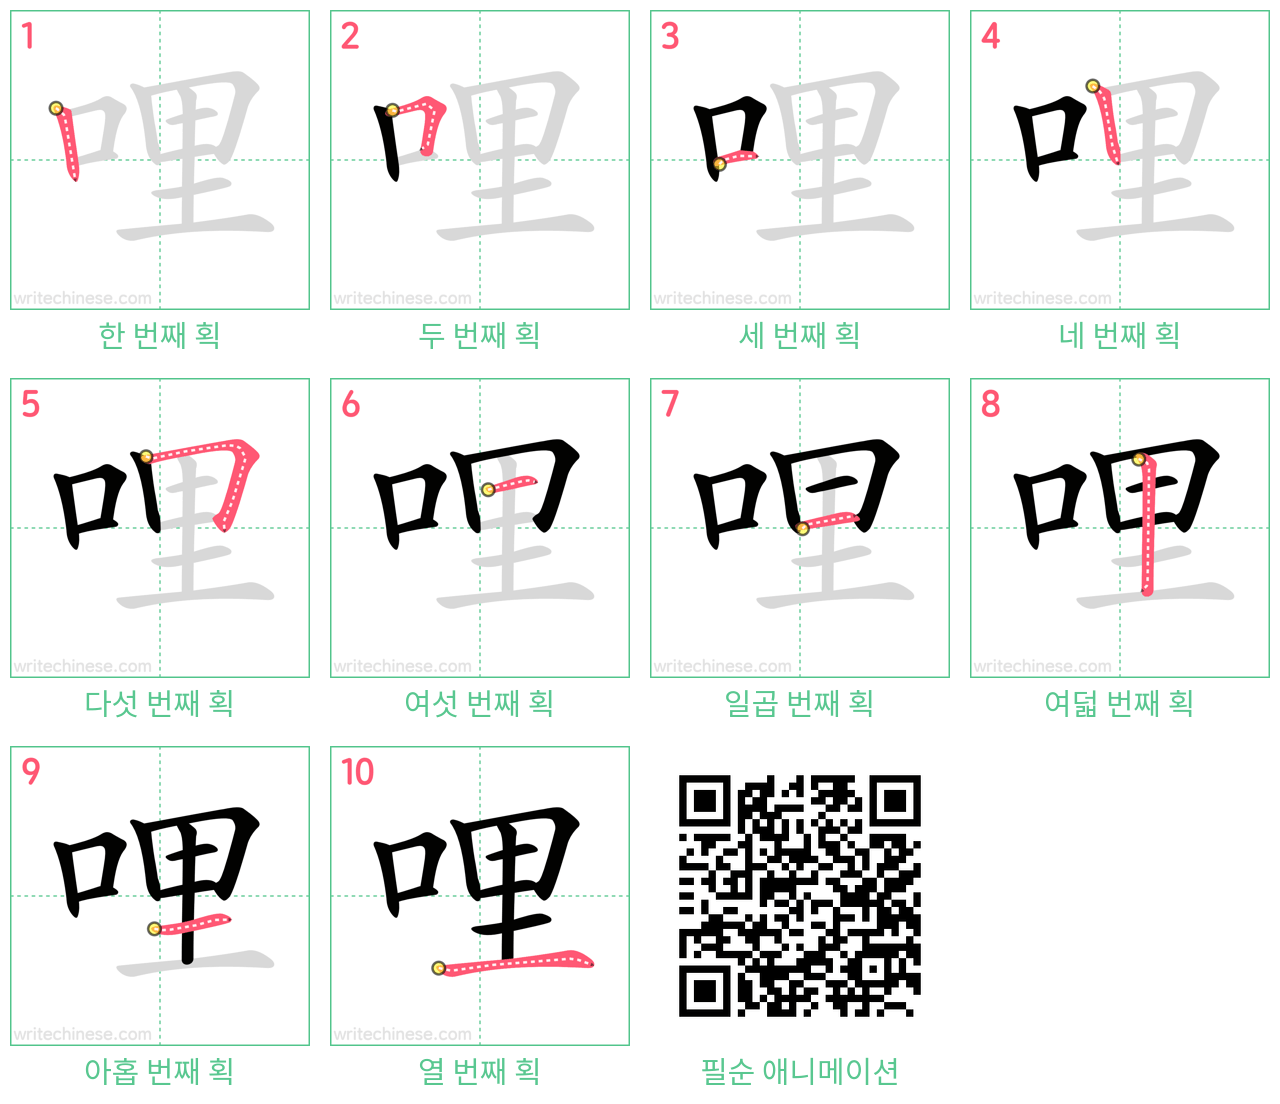 哩 step-by-step stroke order diagrams